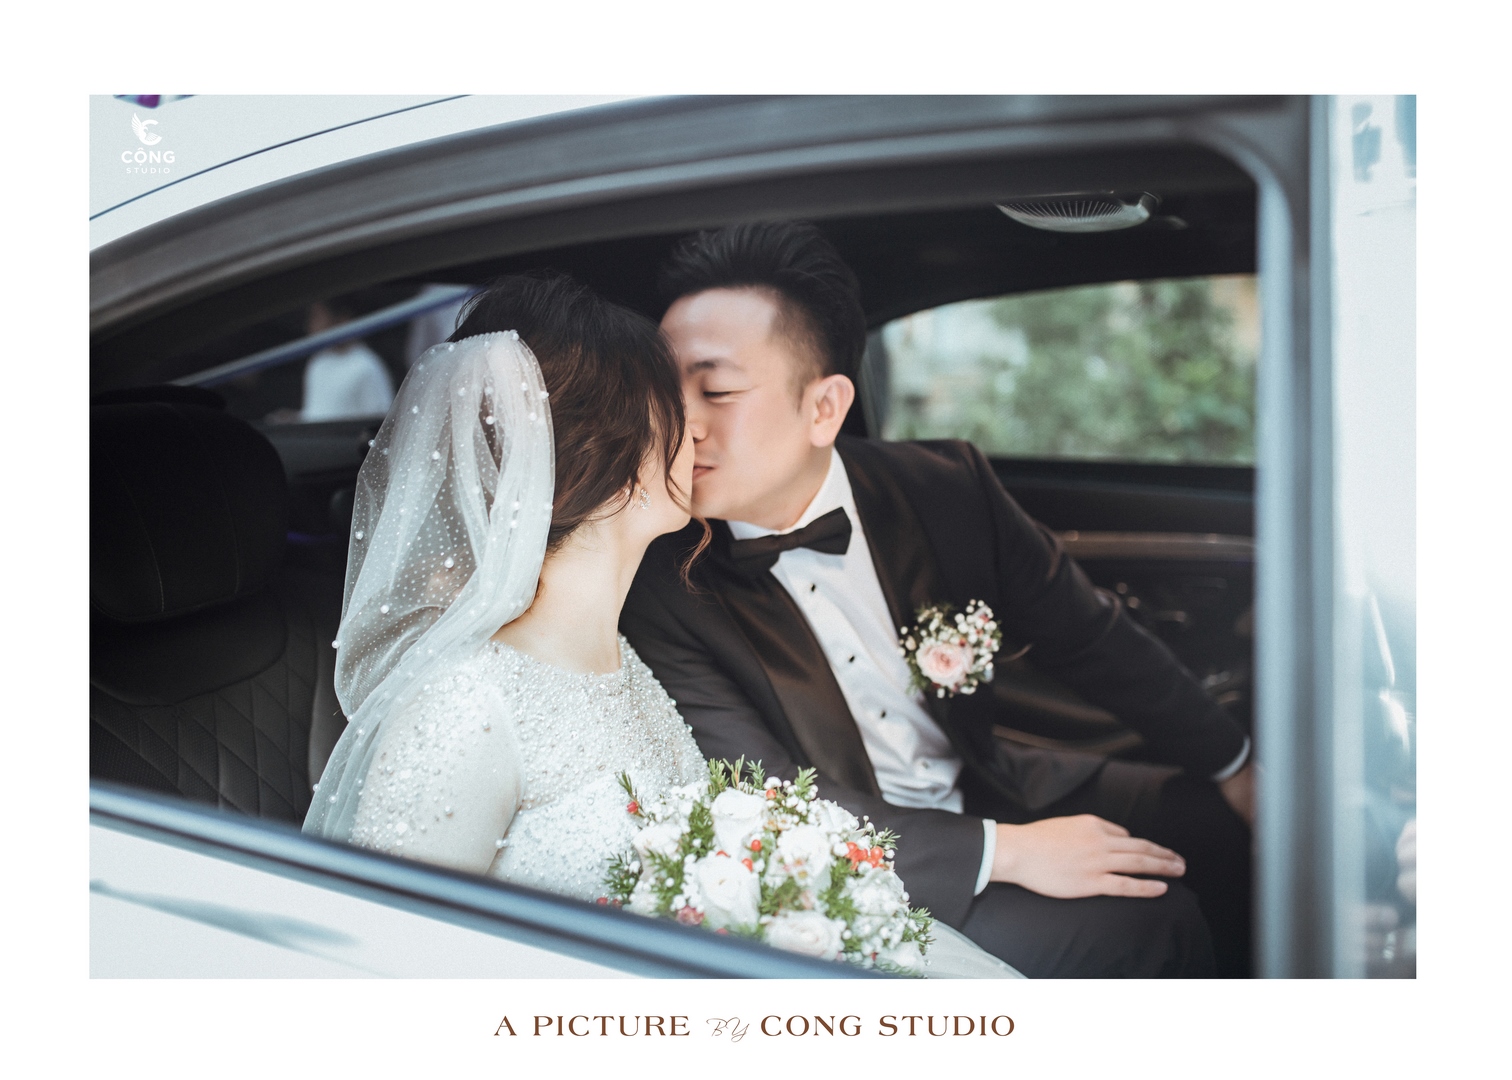 Chụp ảnh phóng sự cưới trọn gói giá rẻ, chất lượng hàng đầu hà nội (4) (Copy)